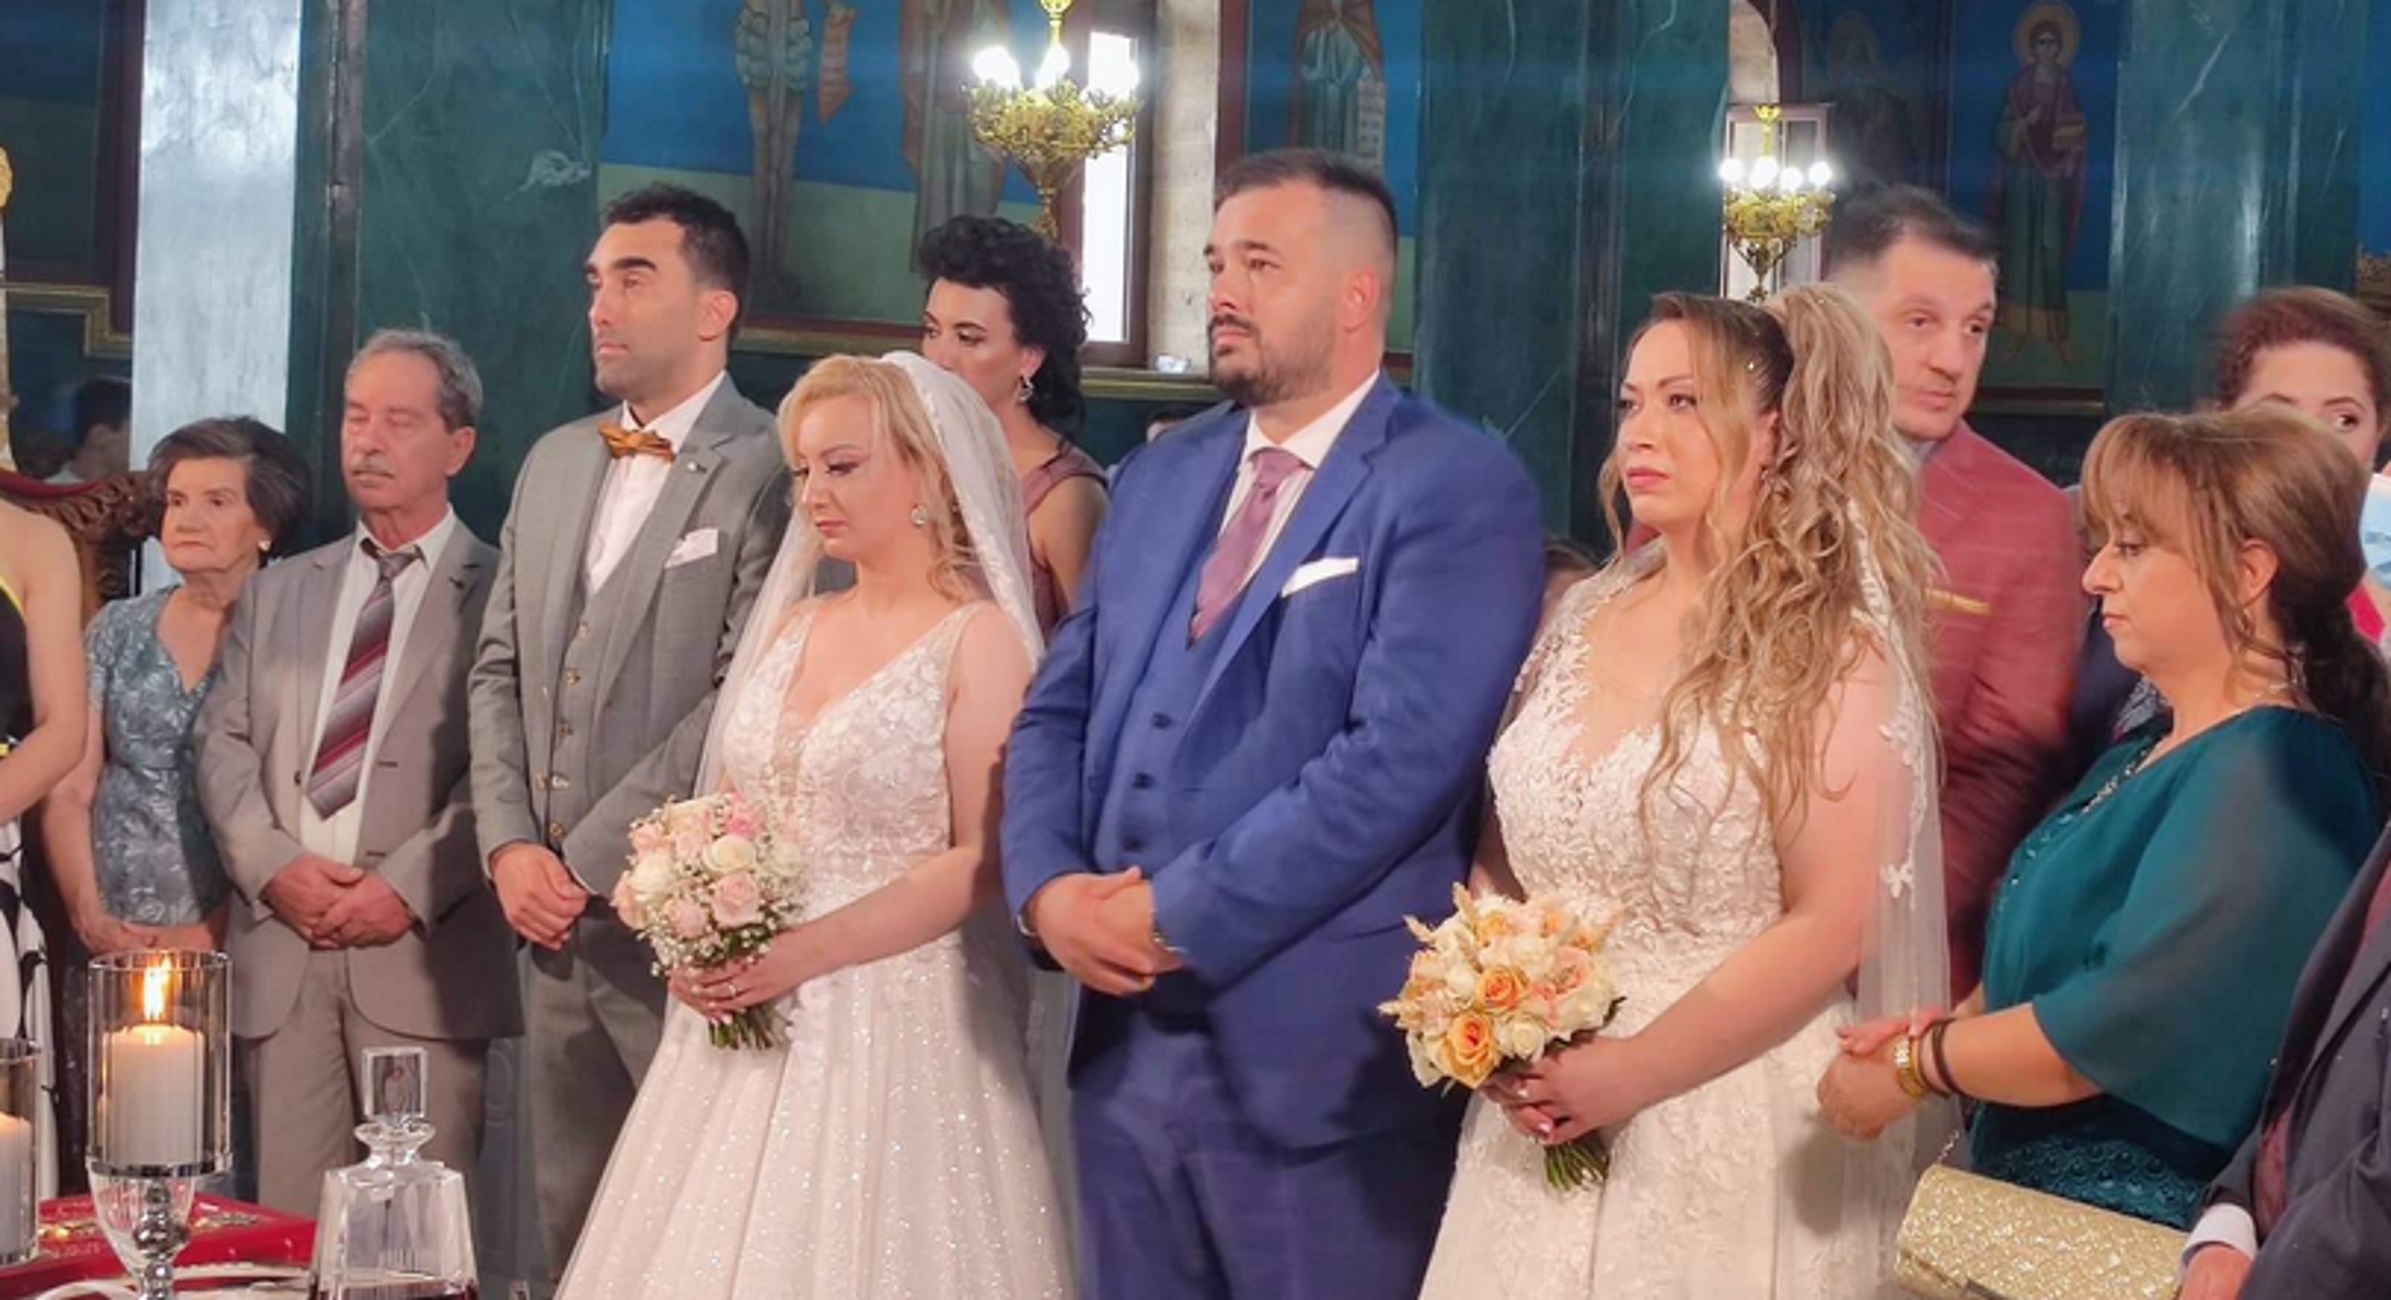 Κοζάνη: Διπλός γάμος με 2 αδερφές να παντρεύονται ταυτόχρονα δύο πρώτα ξαδέρφια – Δείτε τις εικόνες